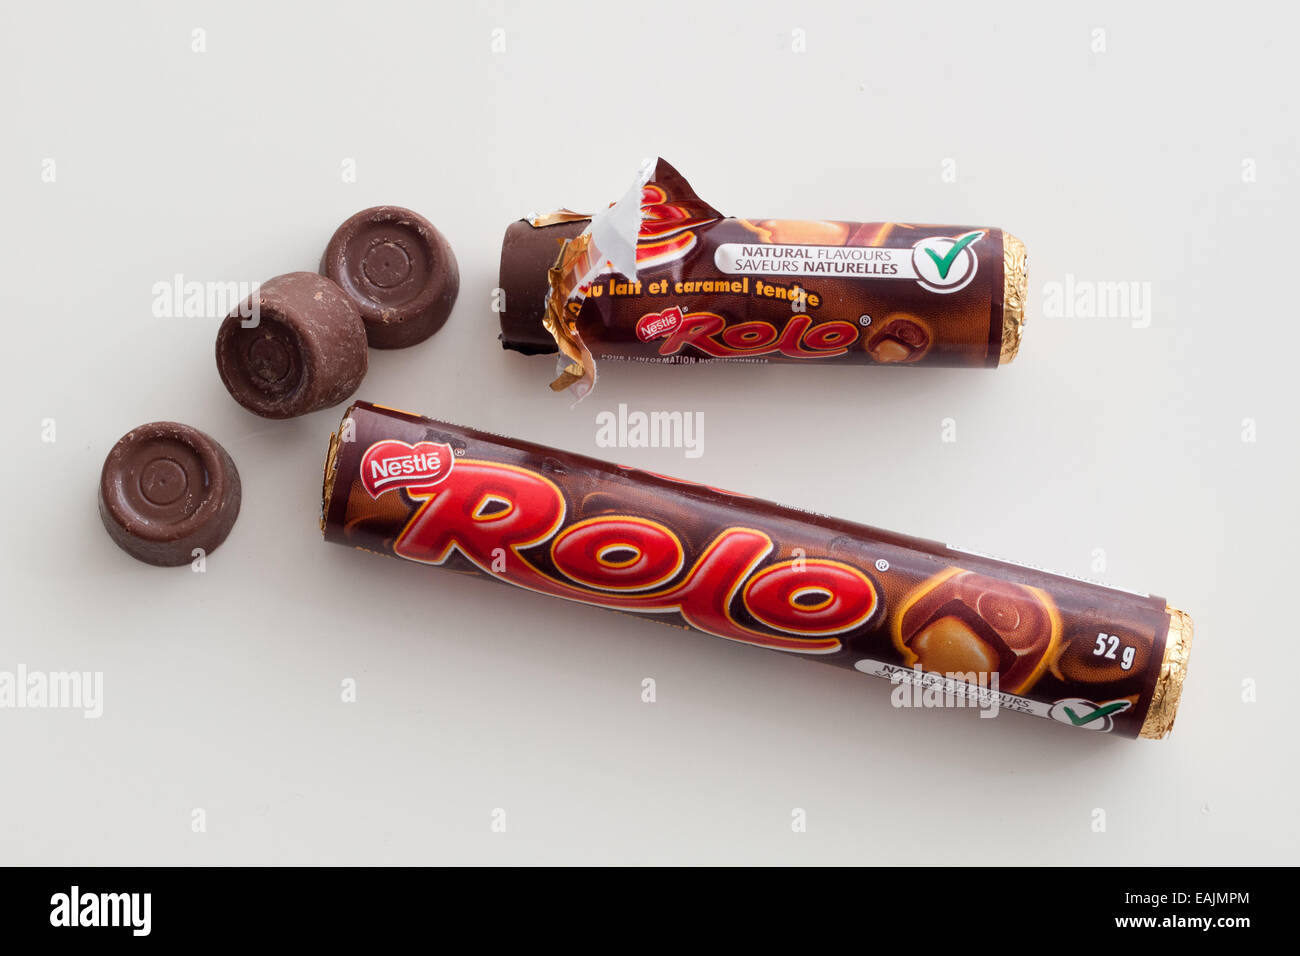 Rohre von Rolo Candy, eine Konditorei, produziert von Nestlé, außer in den USA, wo es unter Lizenz von the Hershey Company hergestellt wird. Stockfoto